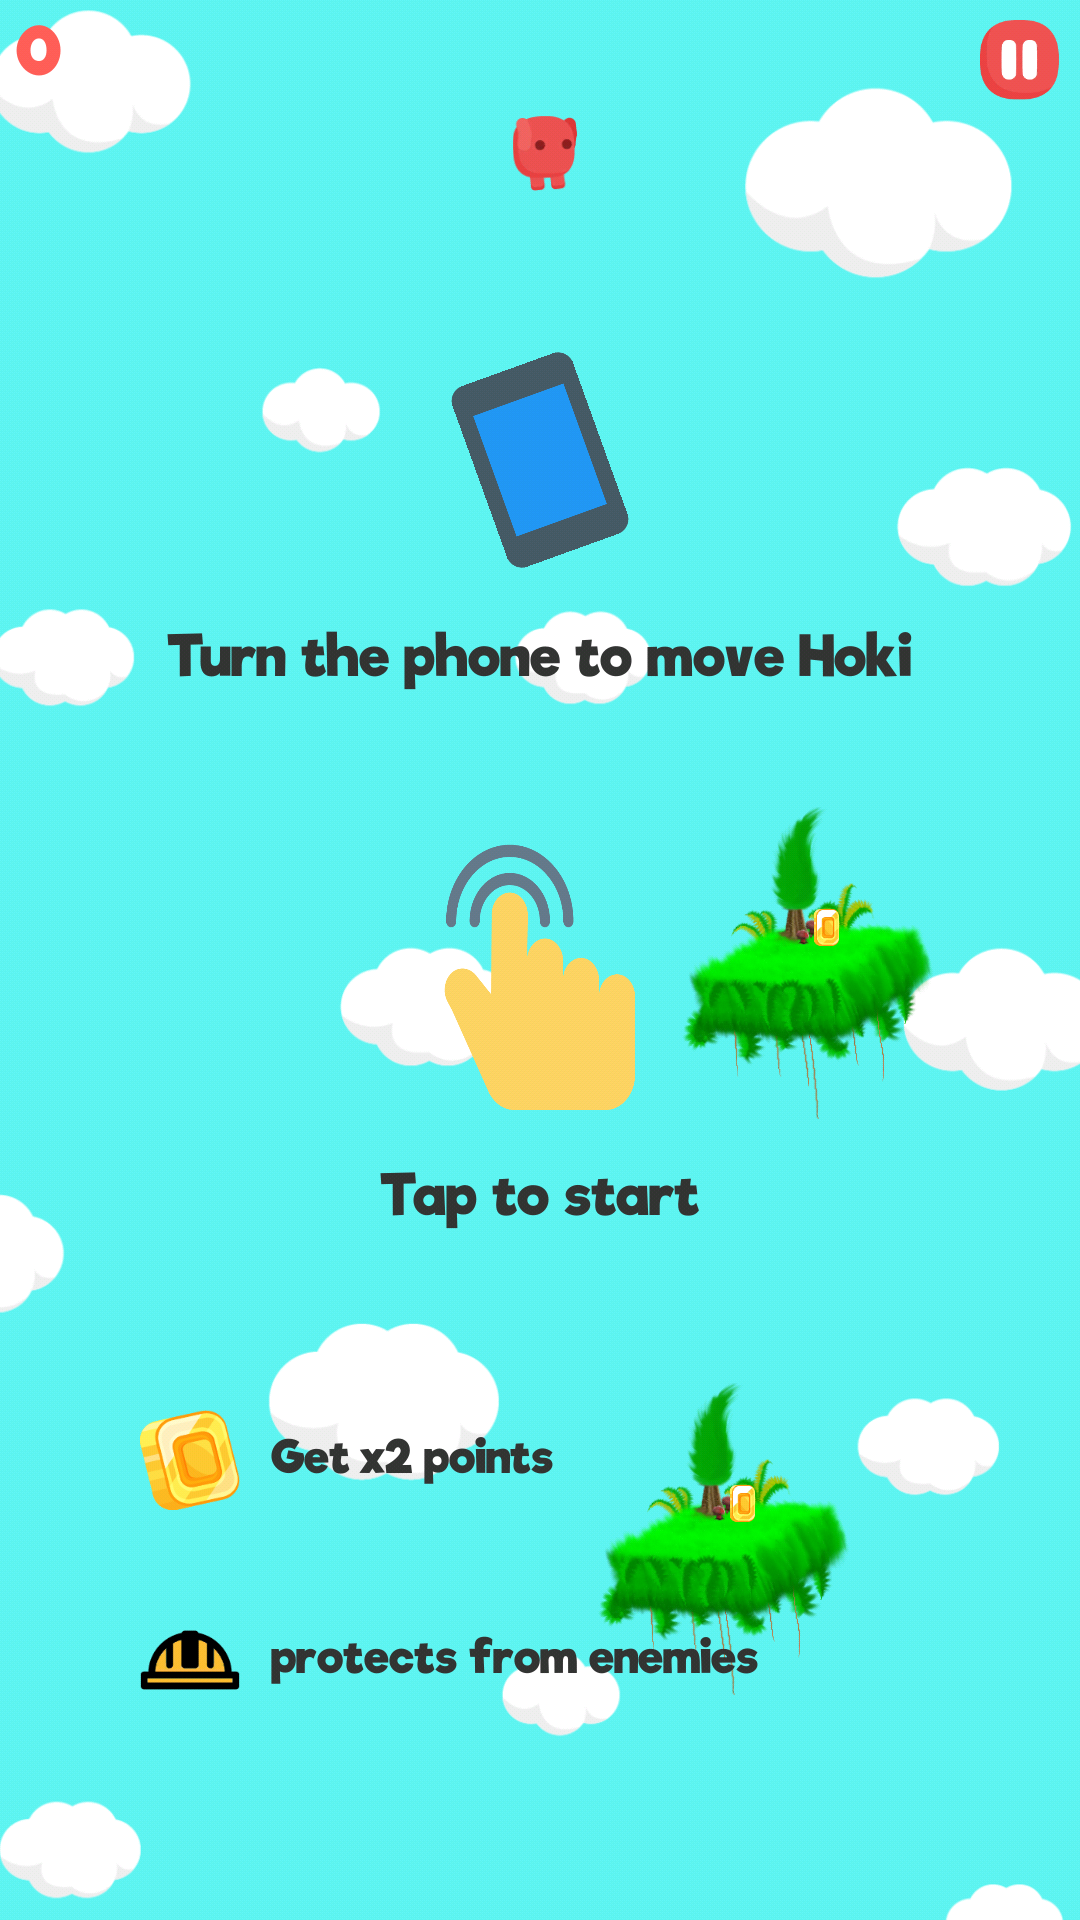 Hoki's Journey